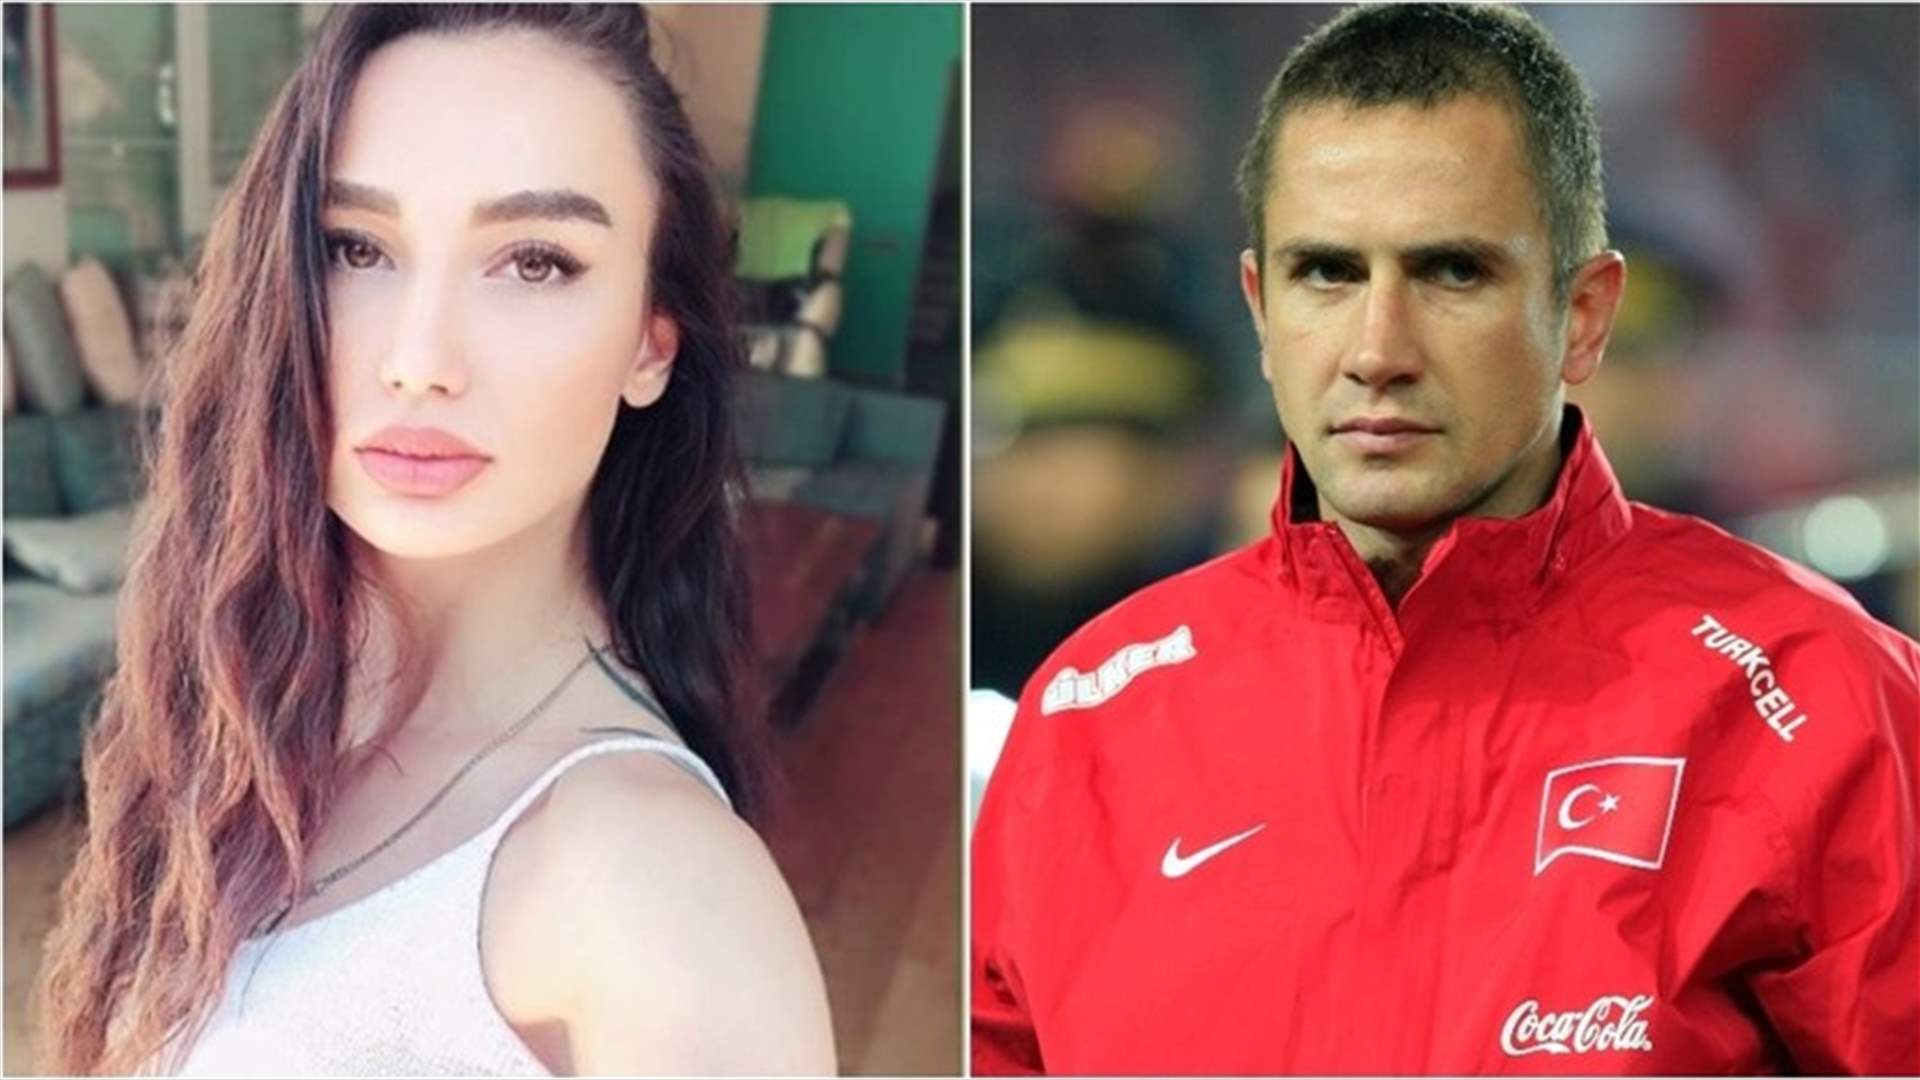 زوجة لاعب كرة قدم تركي تقدّم مليون دولار لتصفية زوجها طمعاً بالميراث